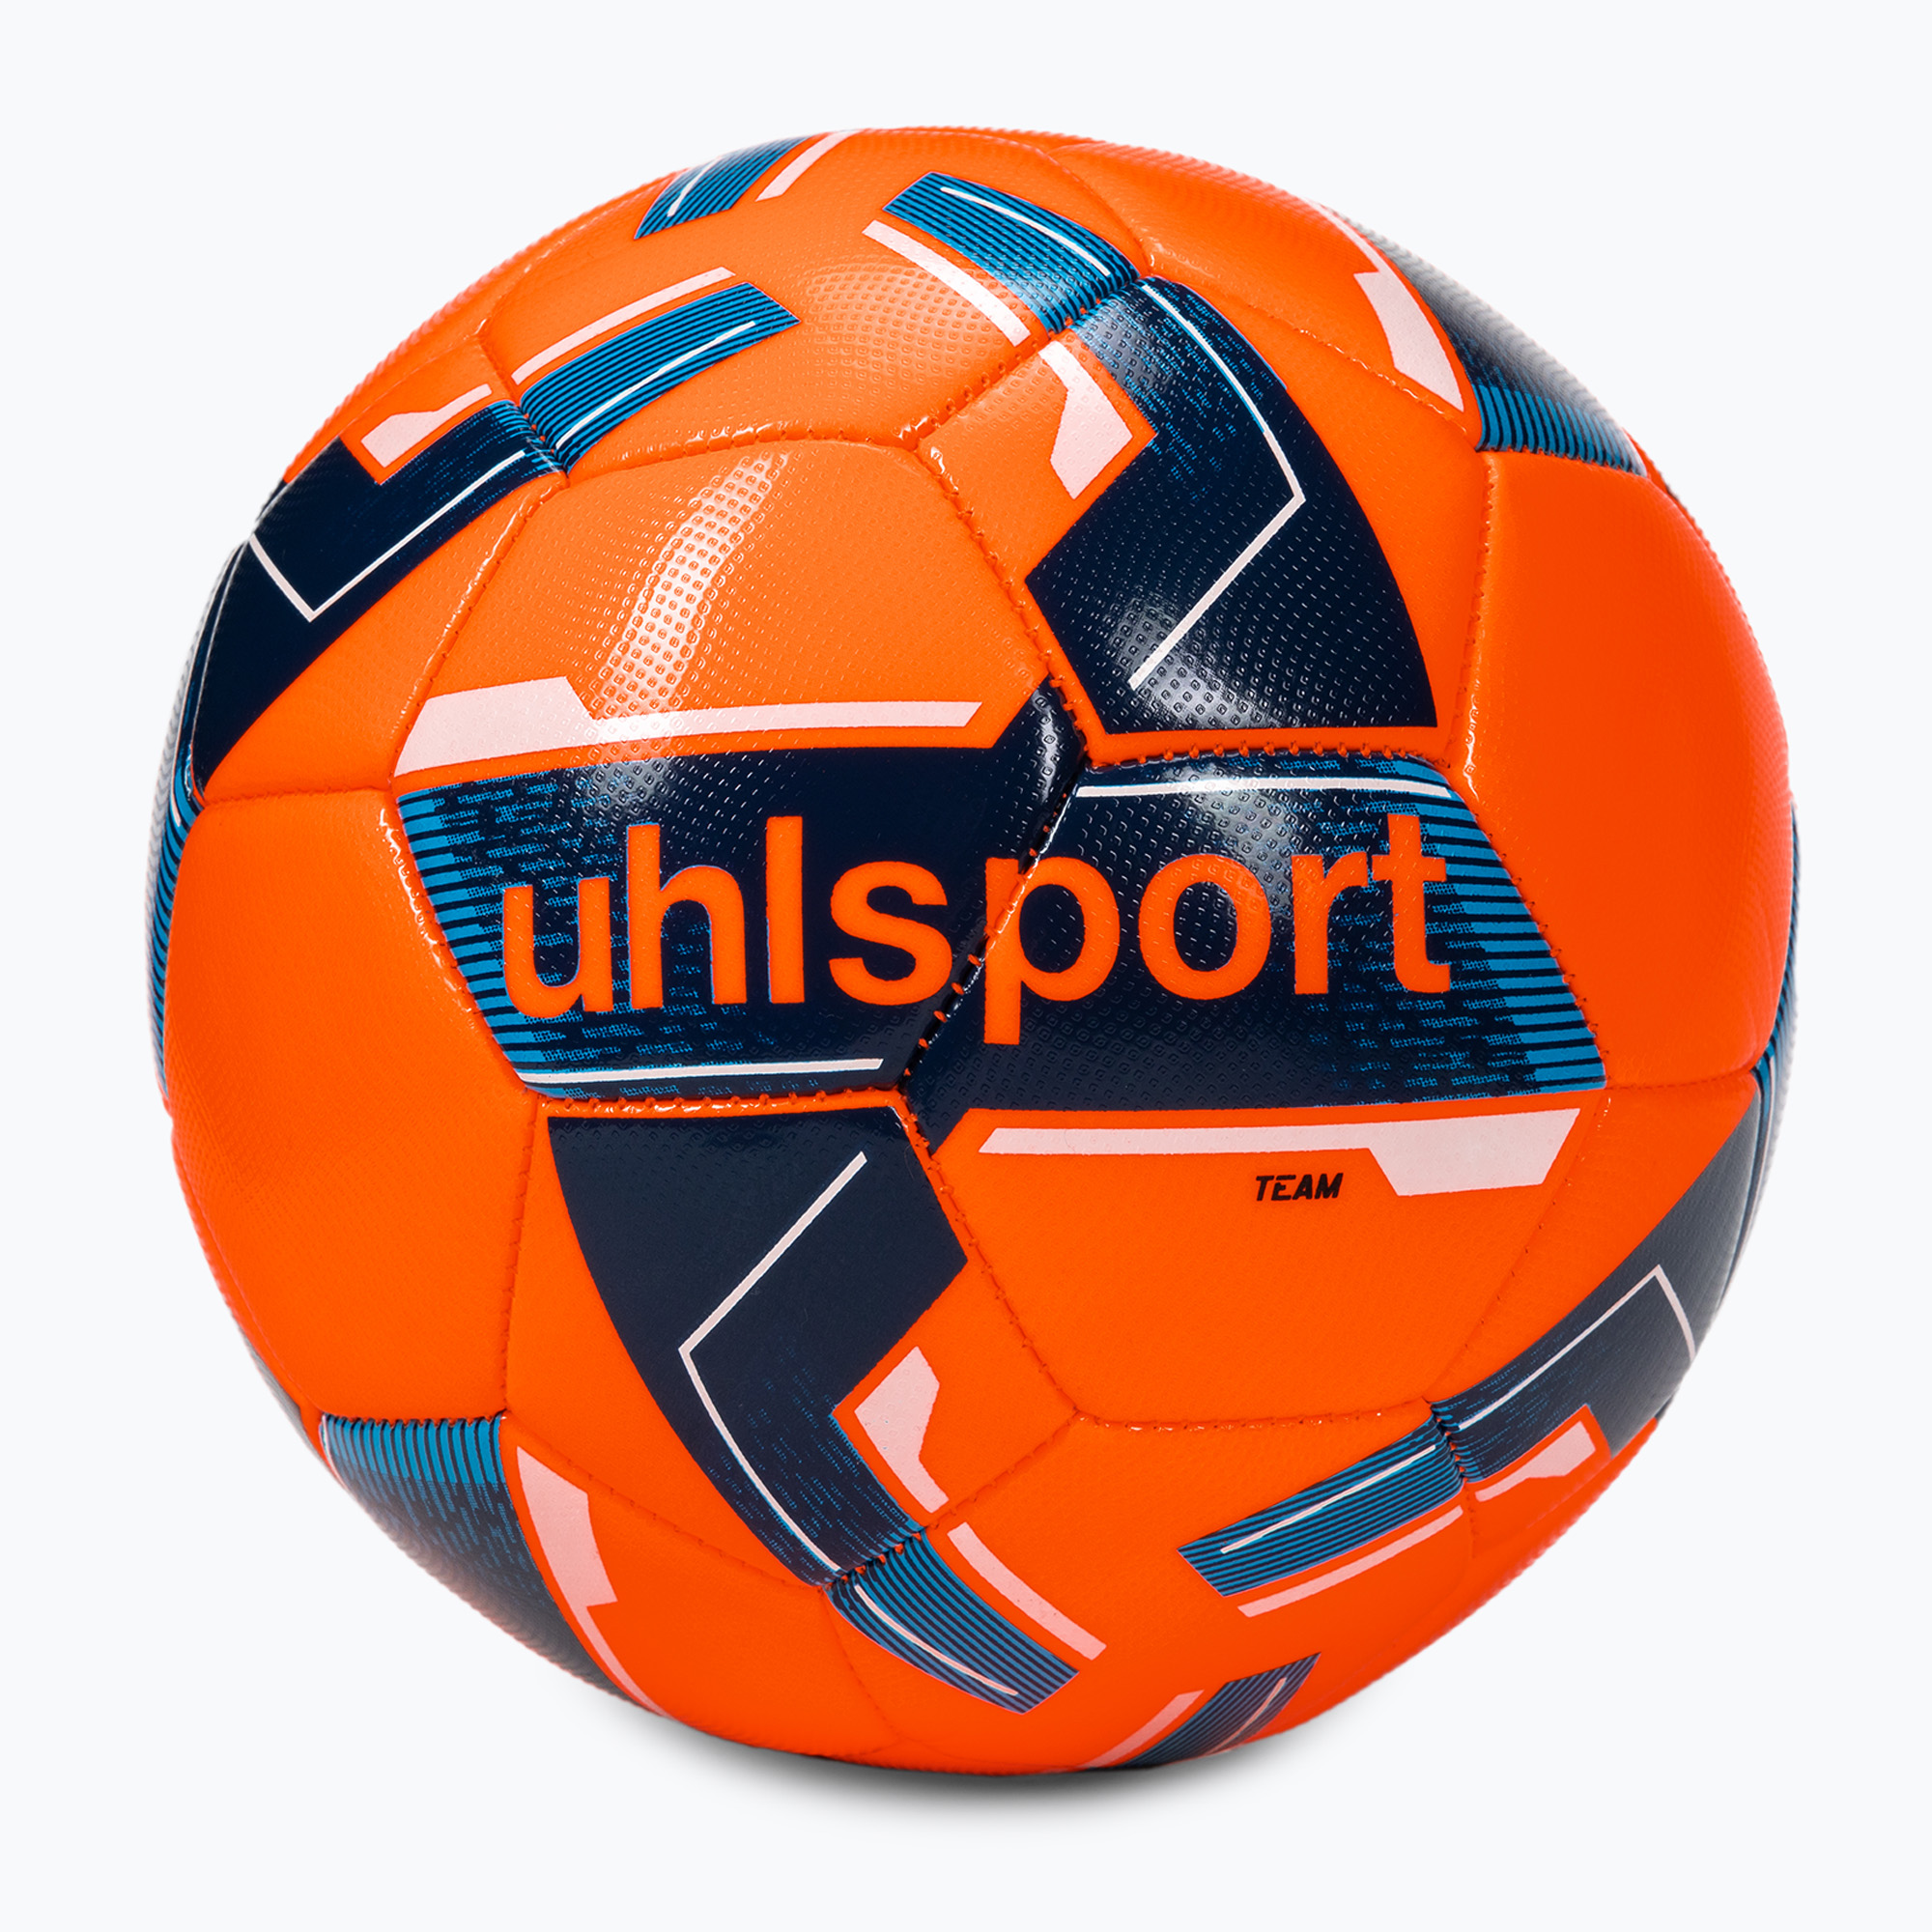 Fotbal uhlsport Team Classic portocaliu 100172502